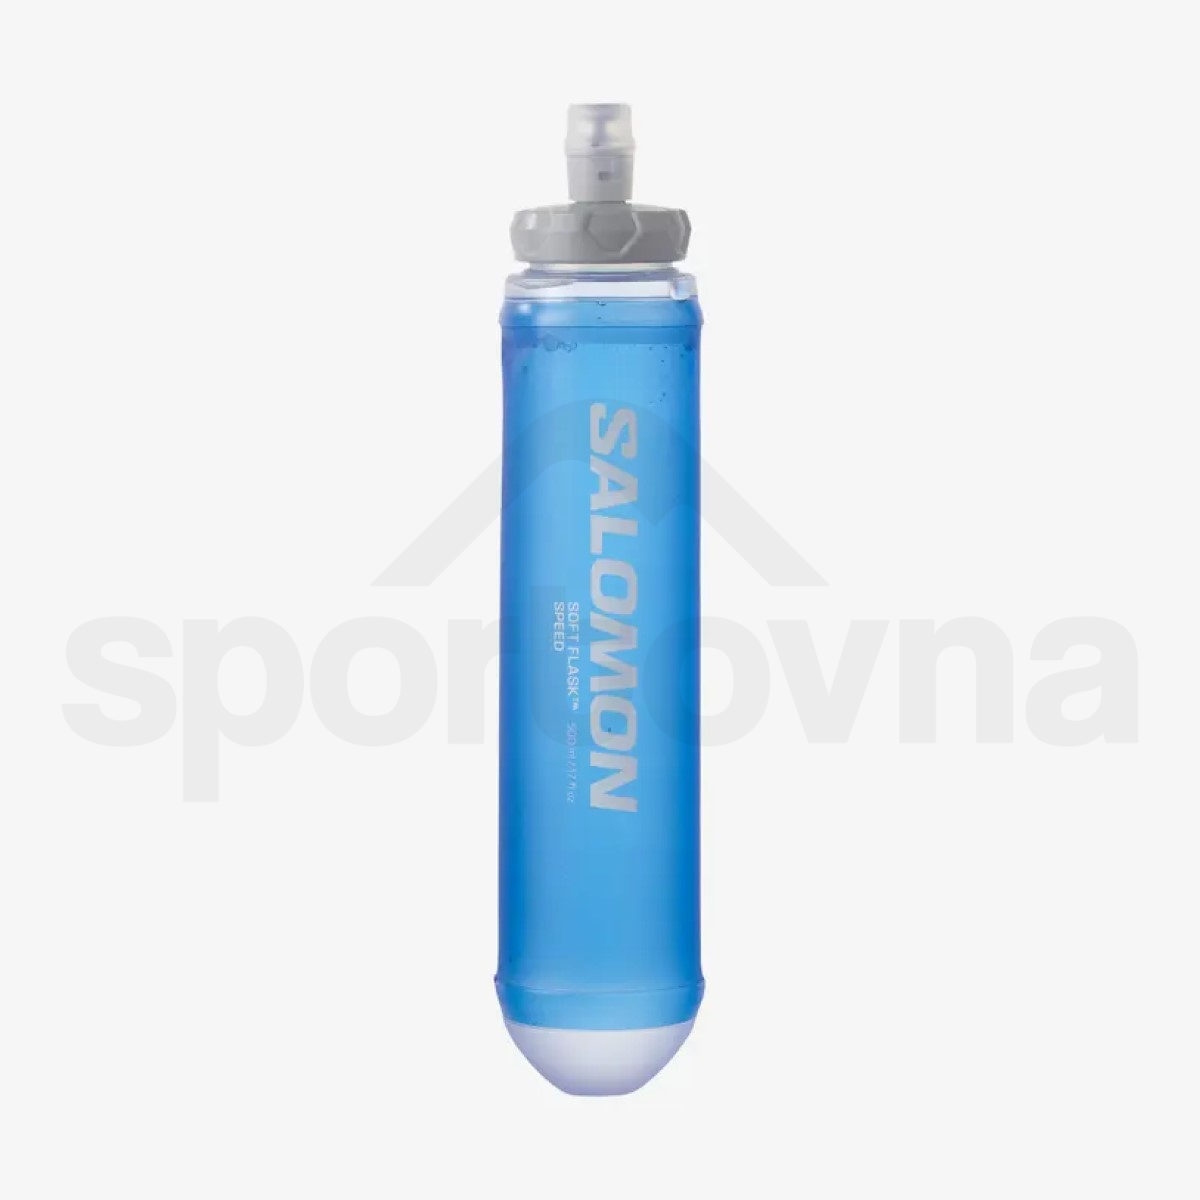 Batoh Salomon Sense Pro 2 with flasks - červená